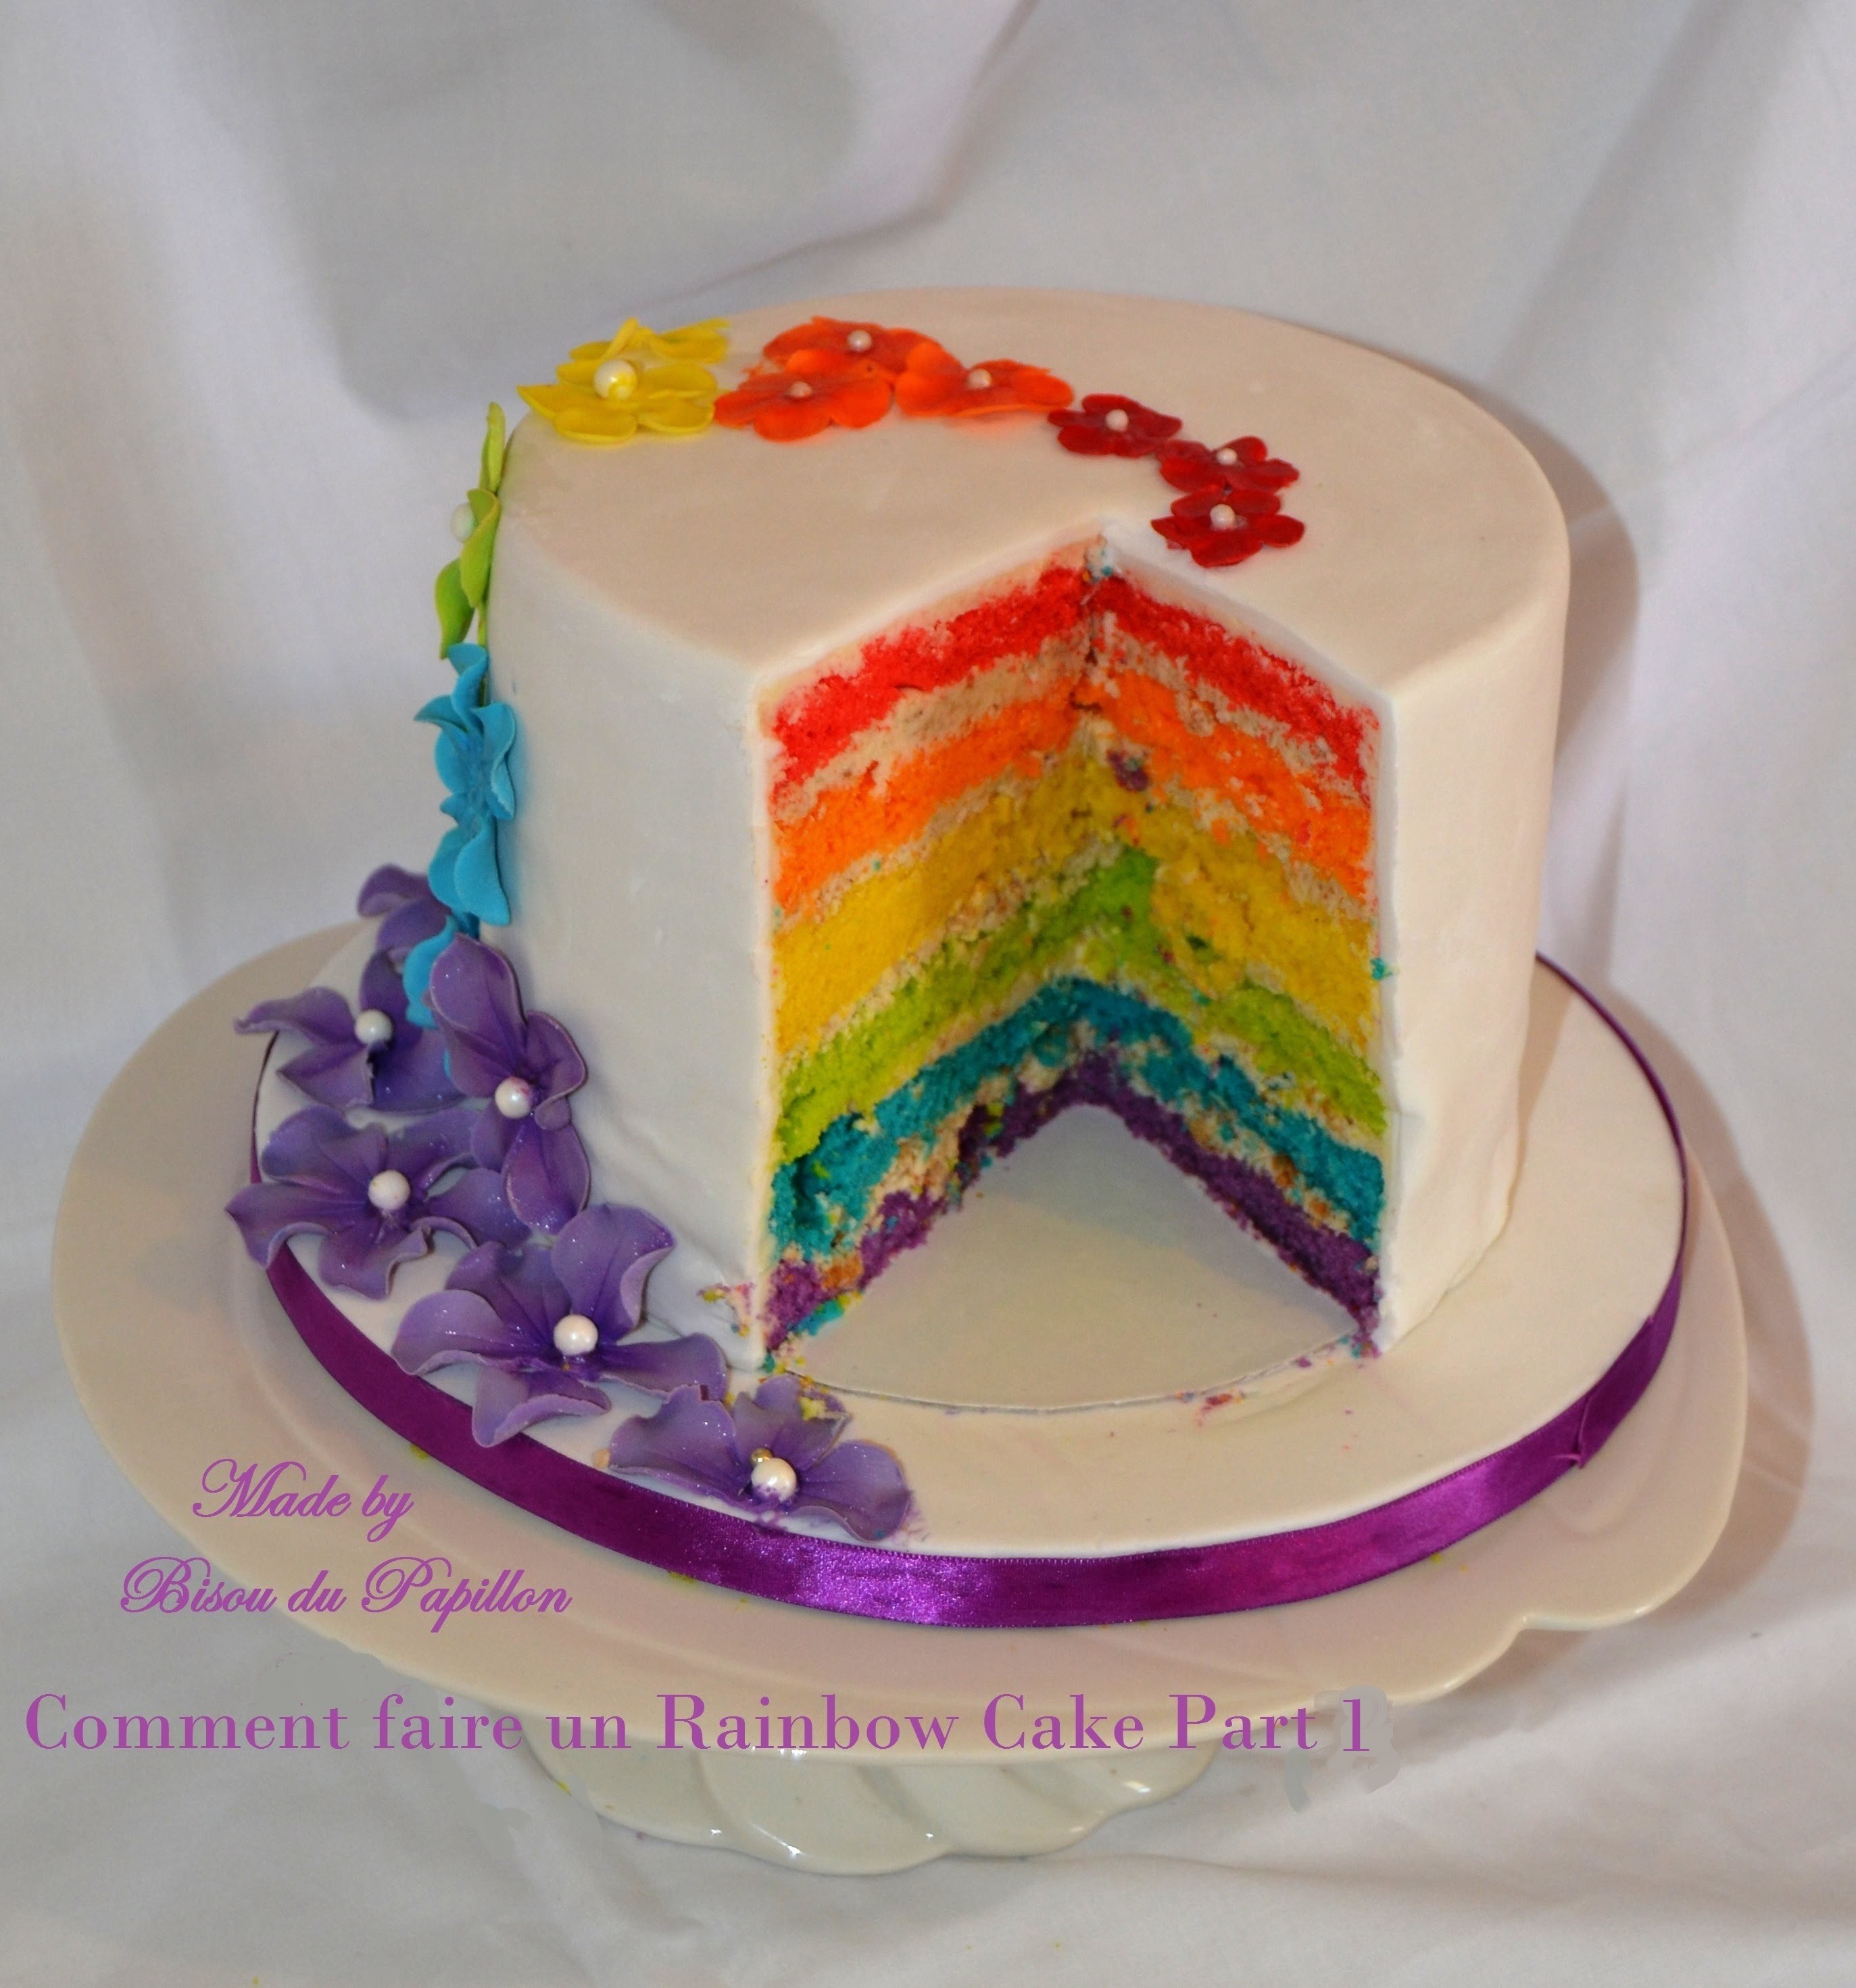 Comment faire un Rainbow Cake Part 1